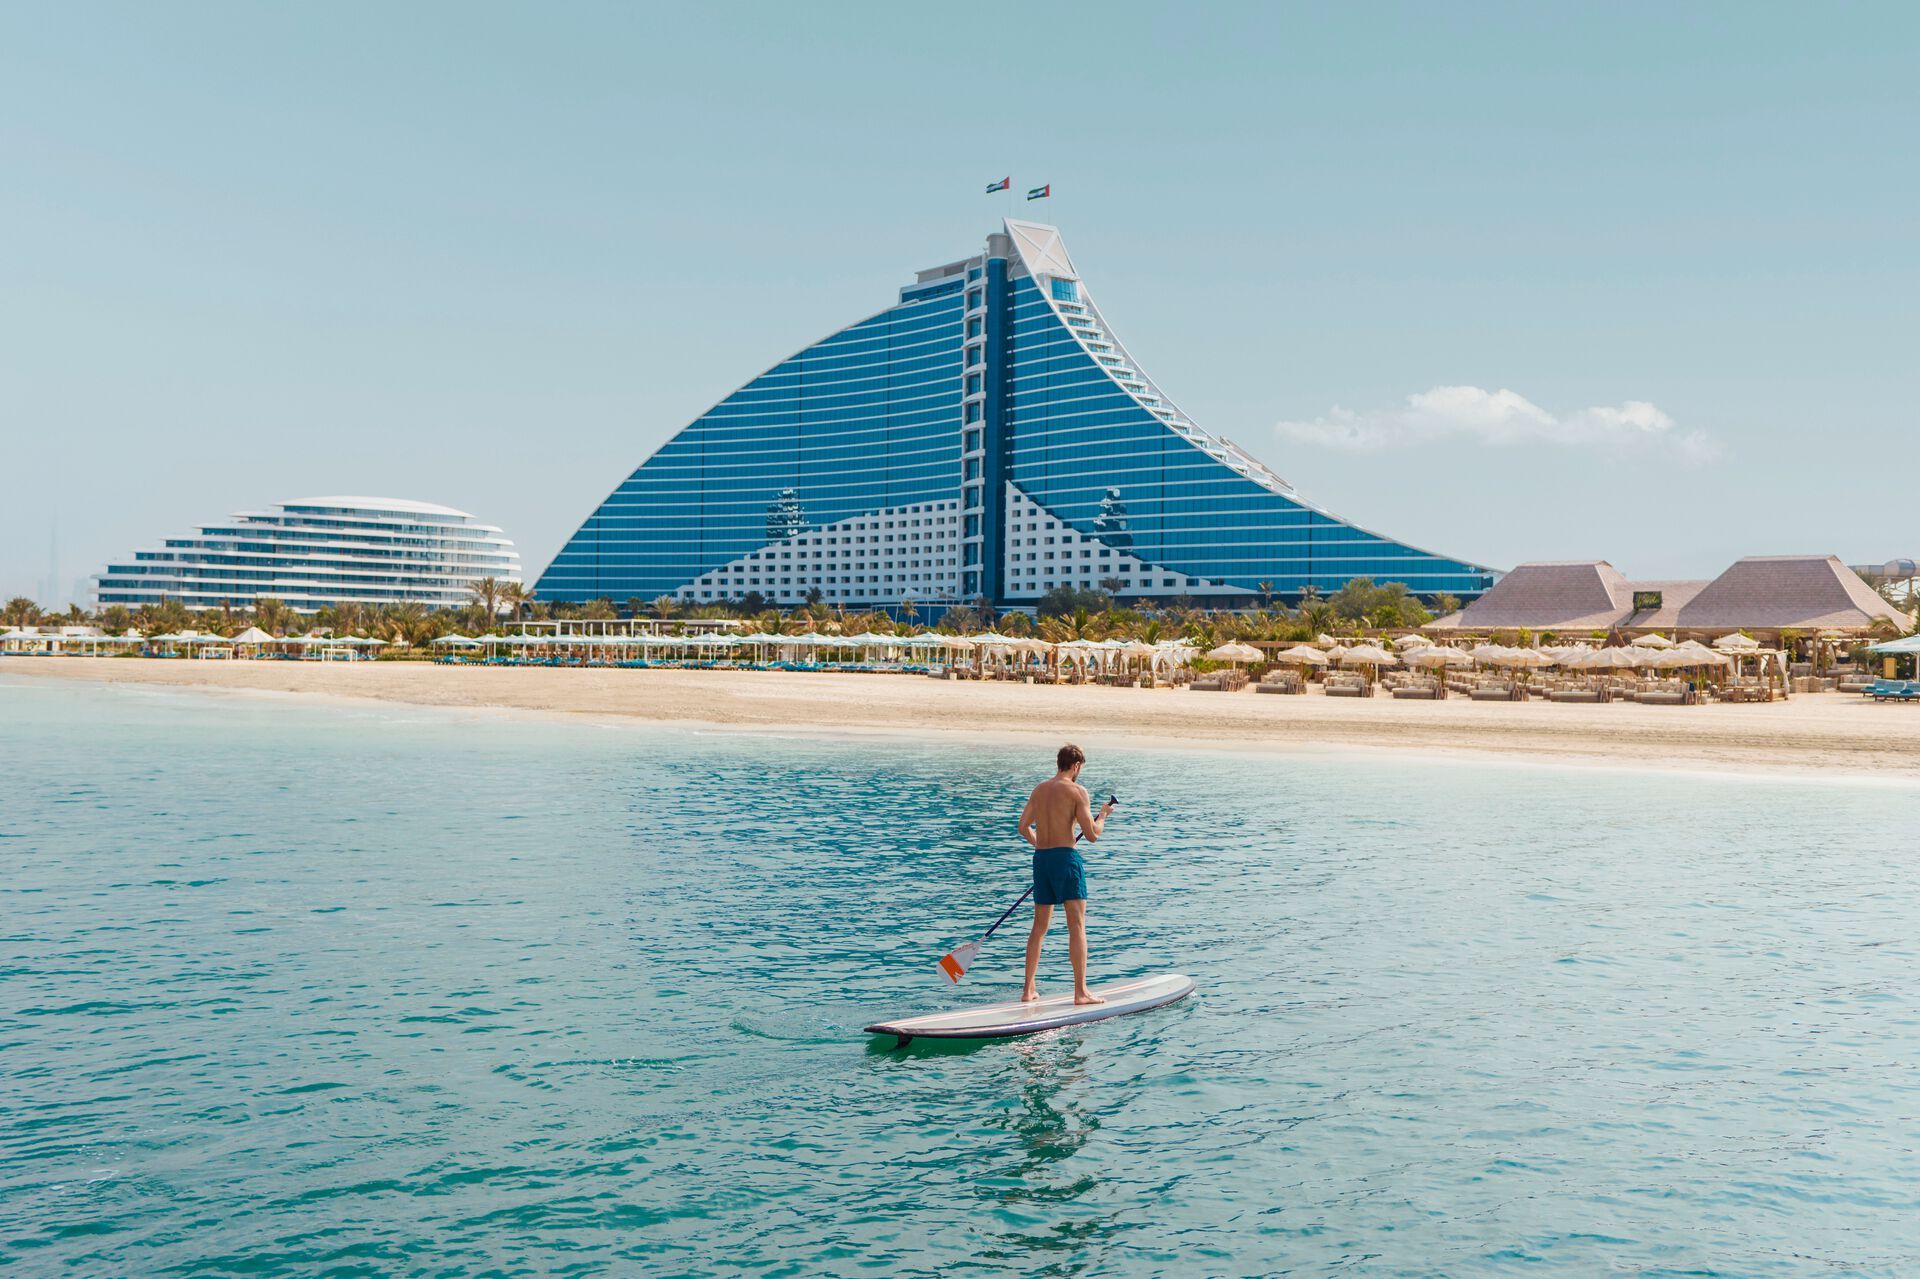 Emirats Arabes Unis - Dubaï - Jumeirah Beach Hôtel 5*